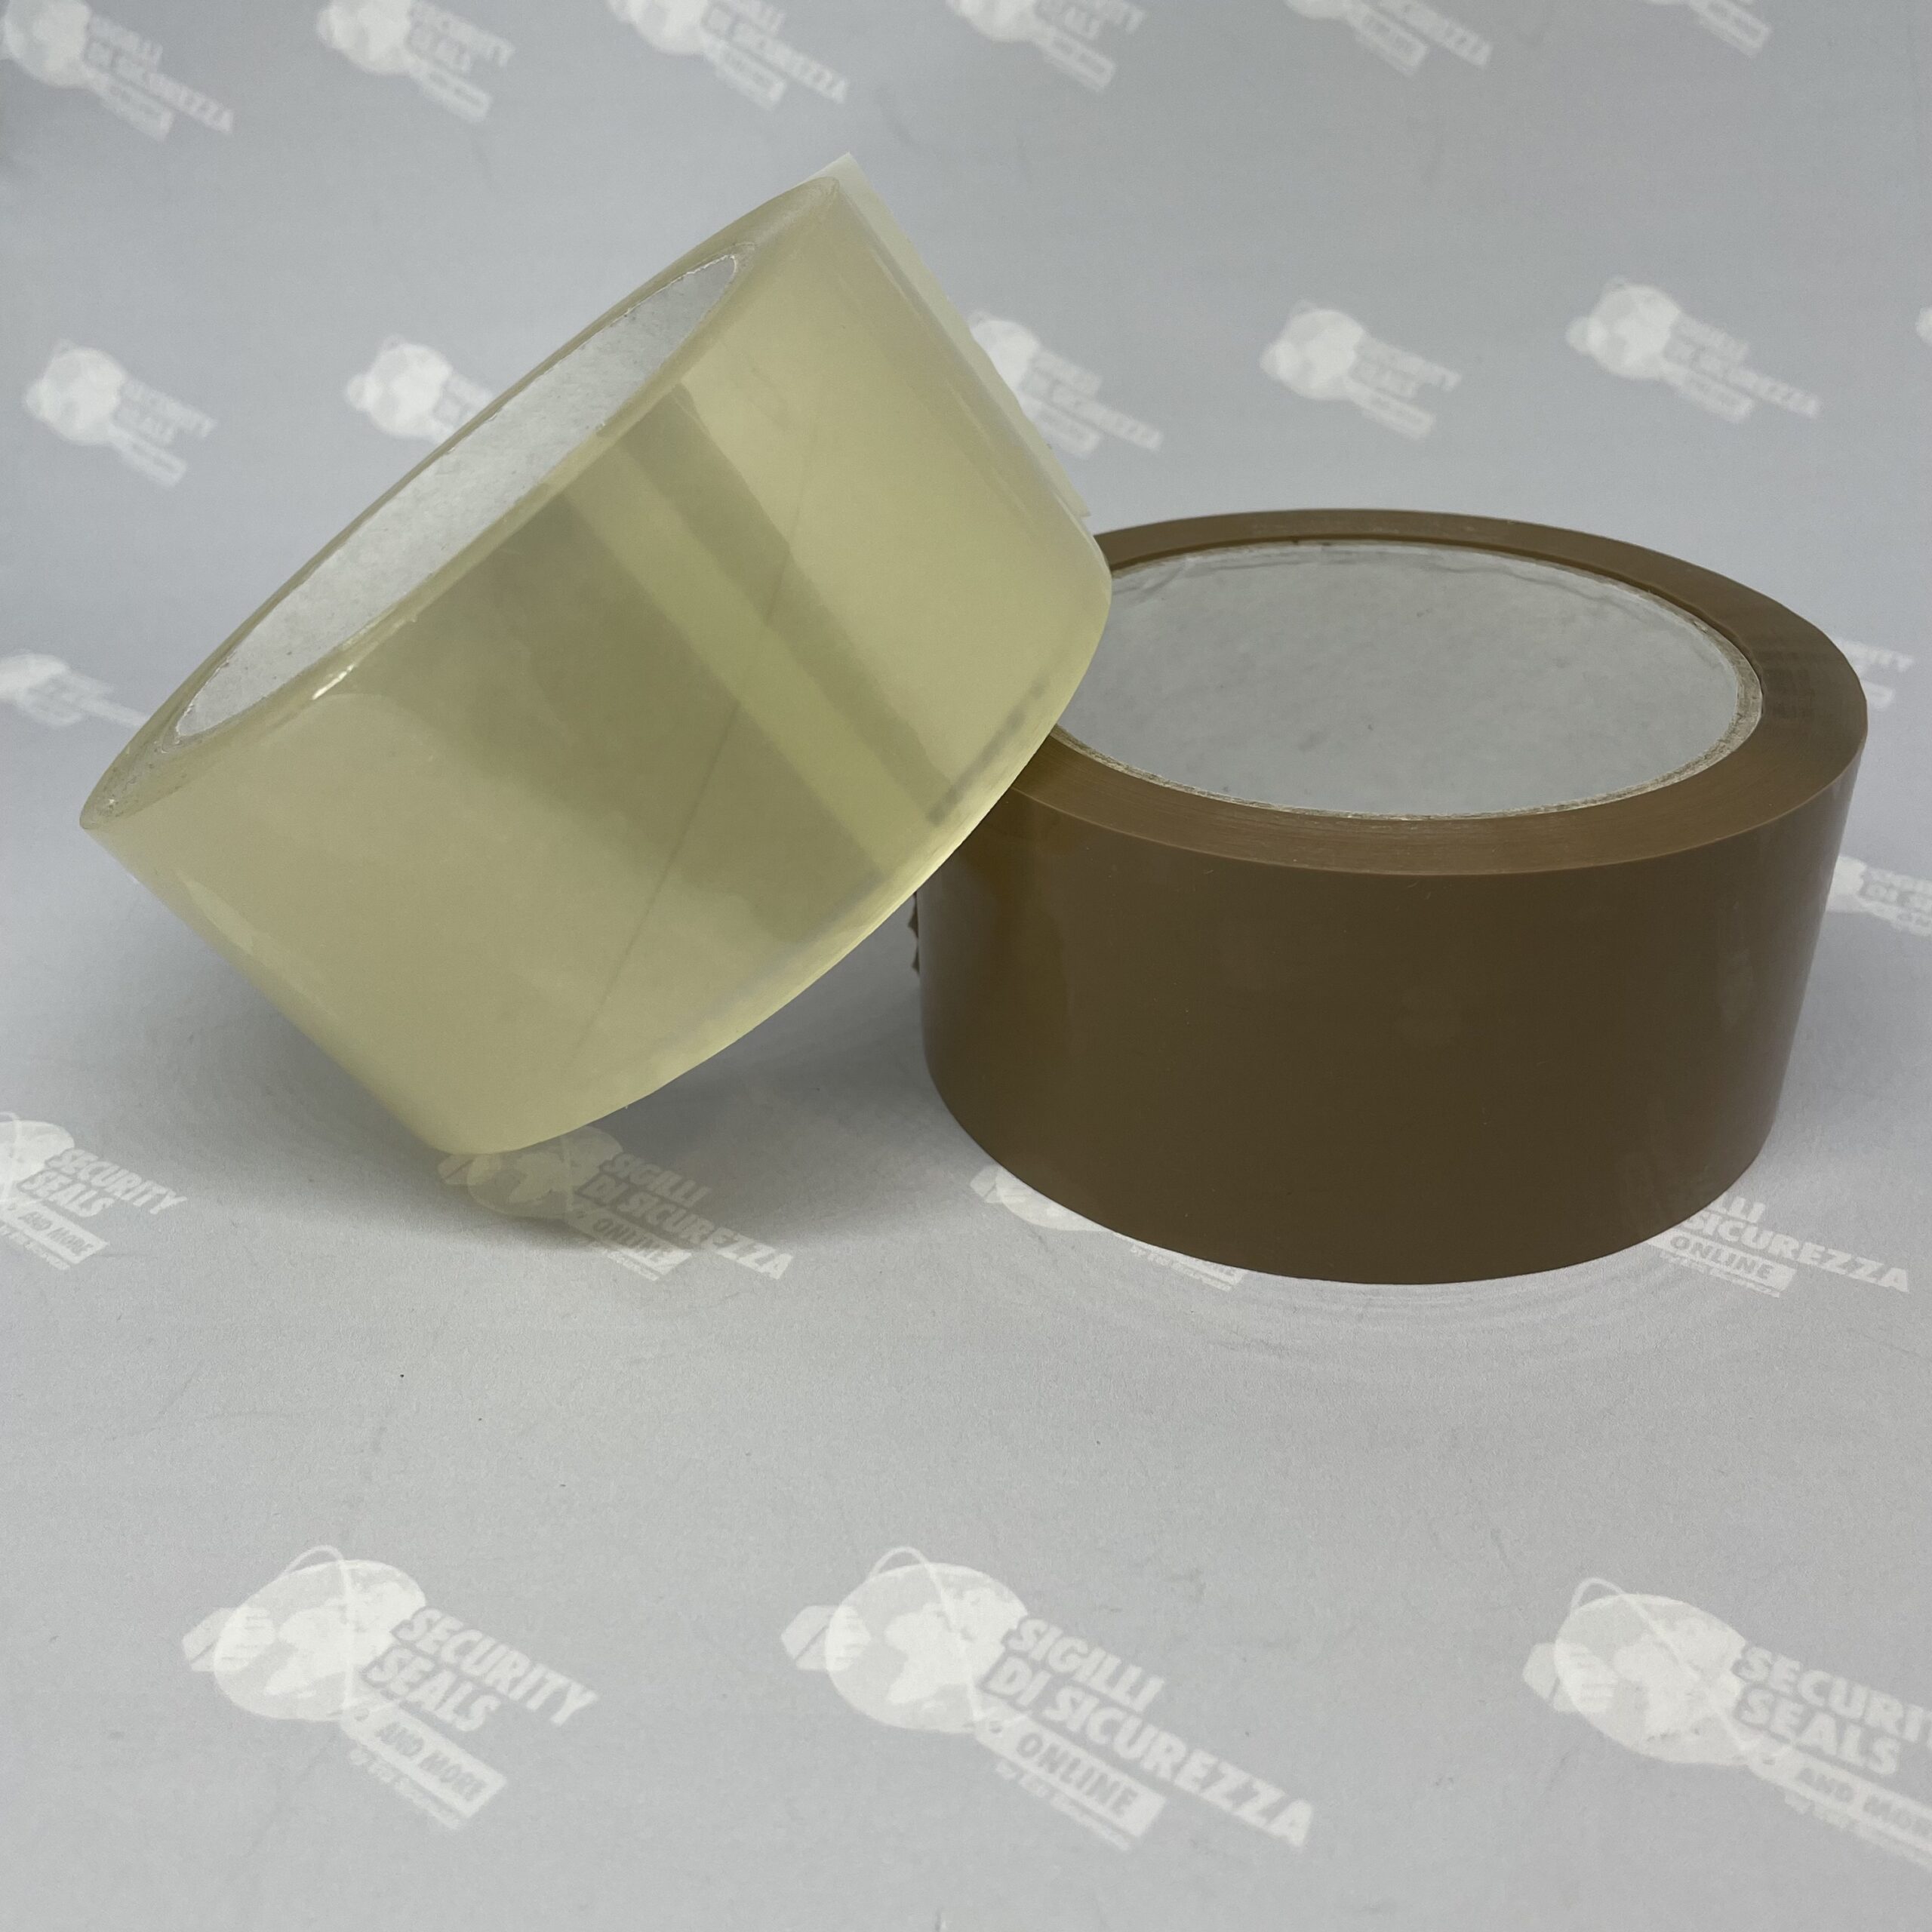 nastro adesivo trasparente o avana, brown adhesive tape, transparent adhesive tape